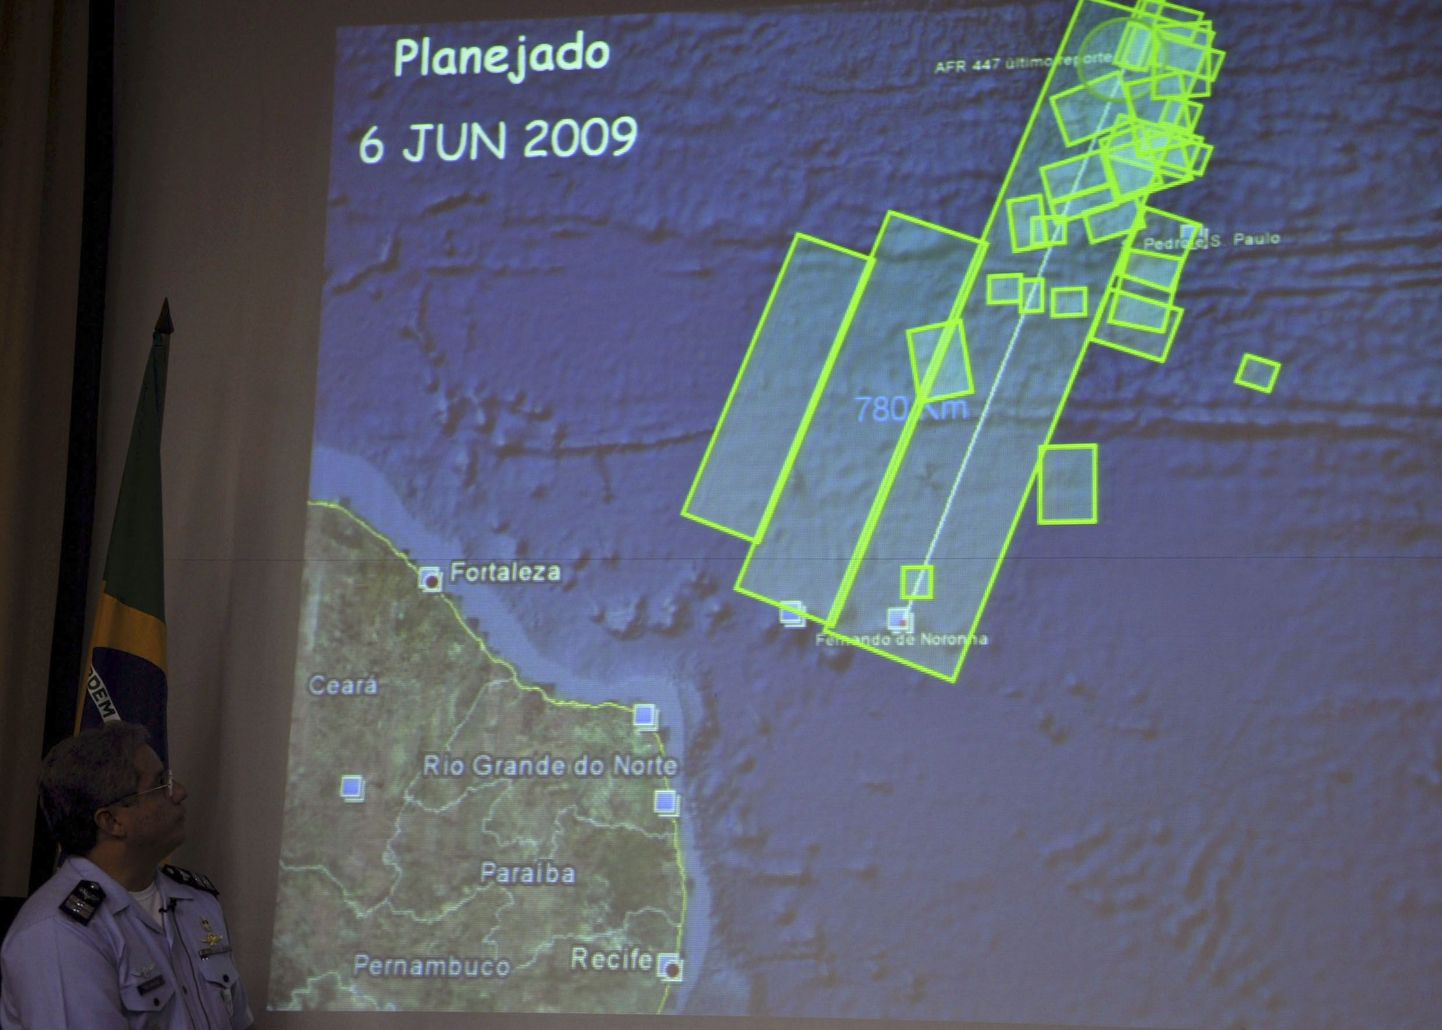 Brasiilia õhujõudude pressiesindaja kolonel Jorge Amaral õnnetuse piirkonda kujutava diagrammi ees.